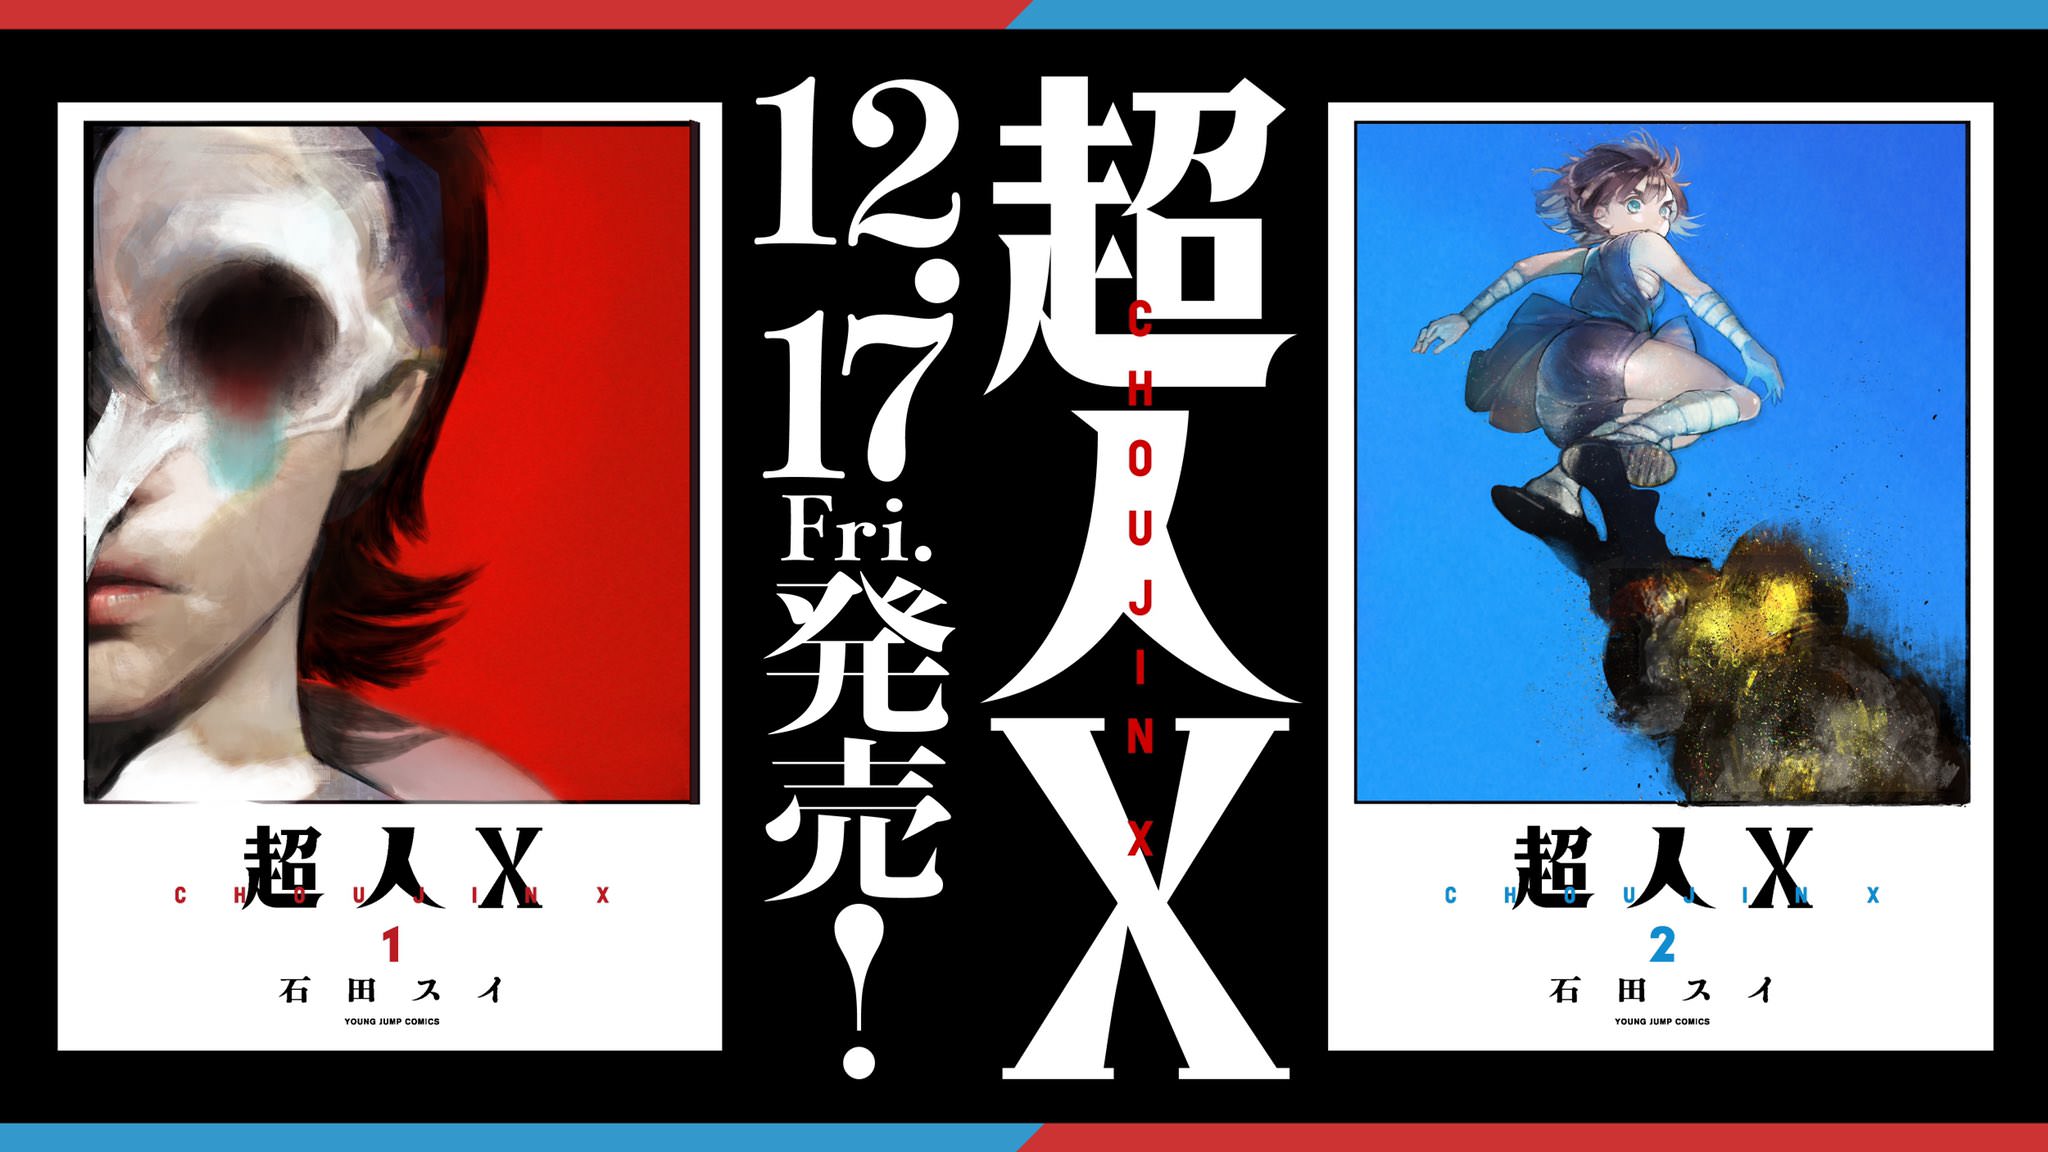 石田スイ 最新作「超人X」12月17日 第1巻・2巻 同時発売!